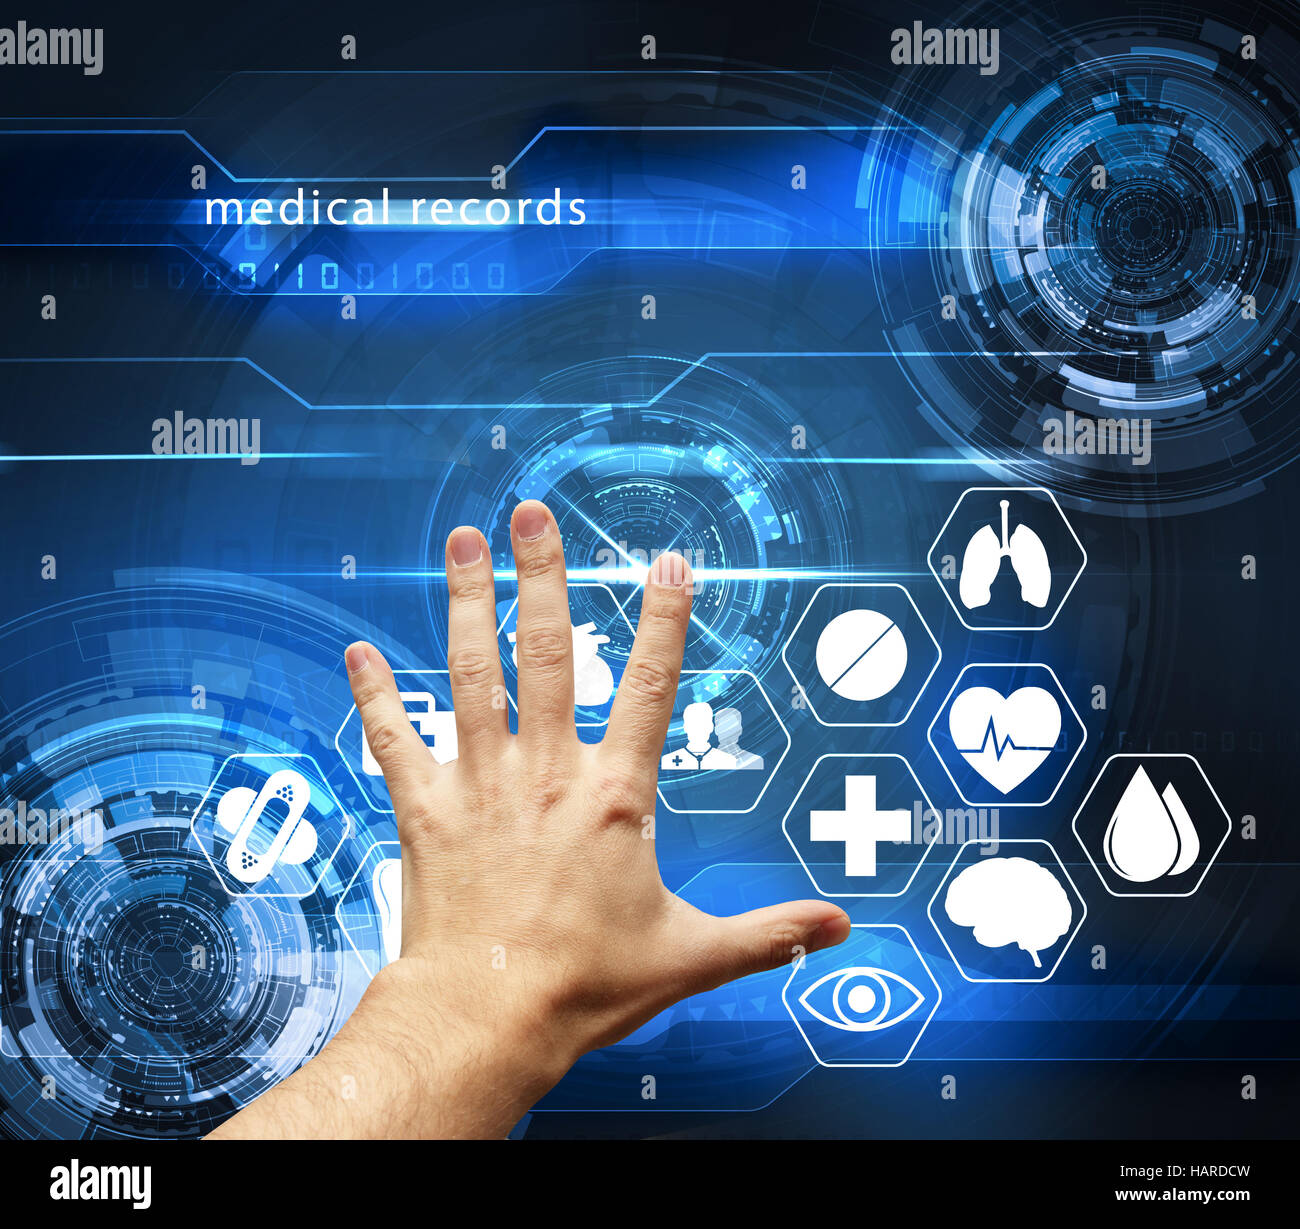 Hand touching futuristic interface avec les dossiers médicaux - soins de santé médical concept Banque D'Images